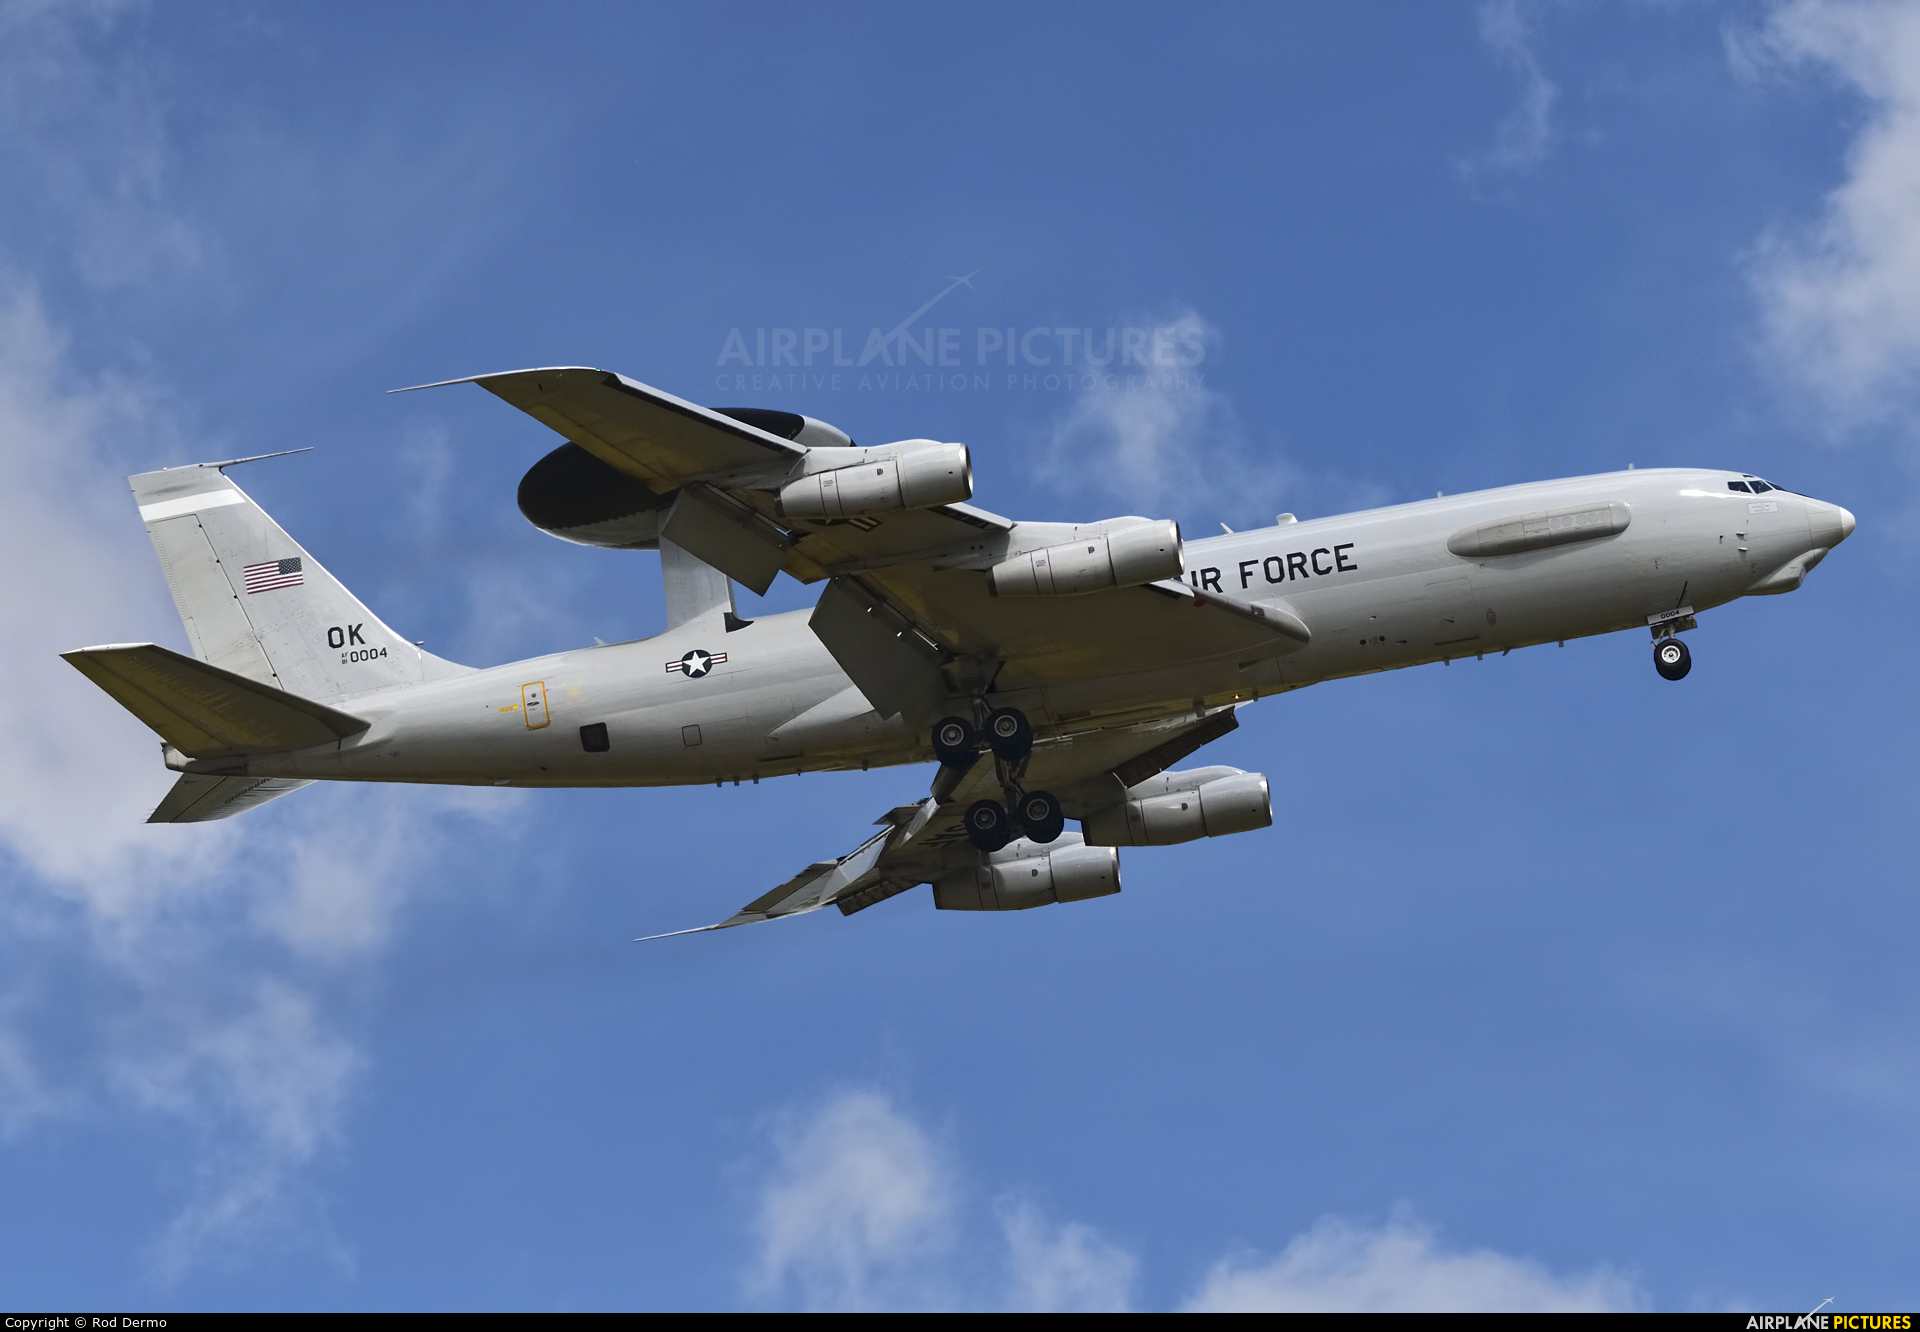 USA - Air Force 81-0004 aircraft at London  Intl, ON